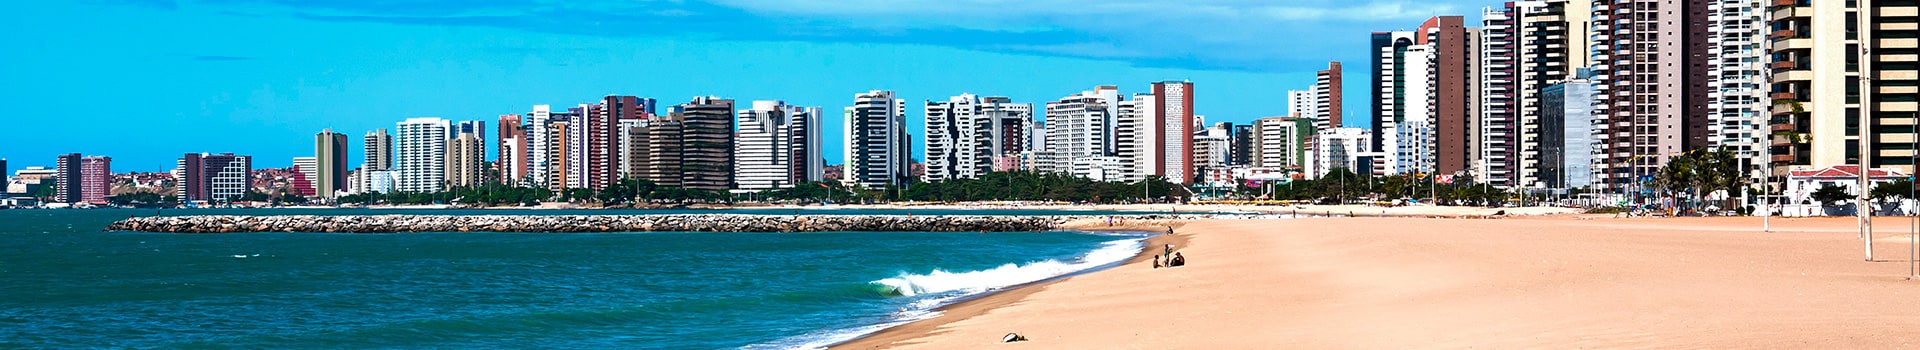 Porto alegre - Fortaleza